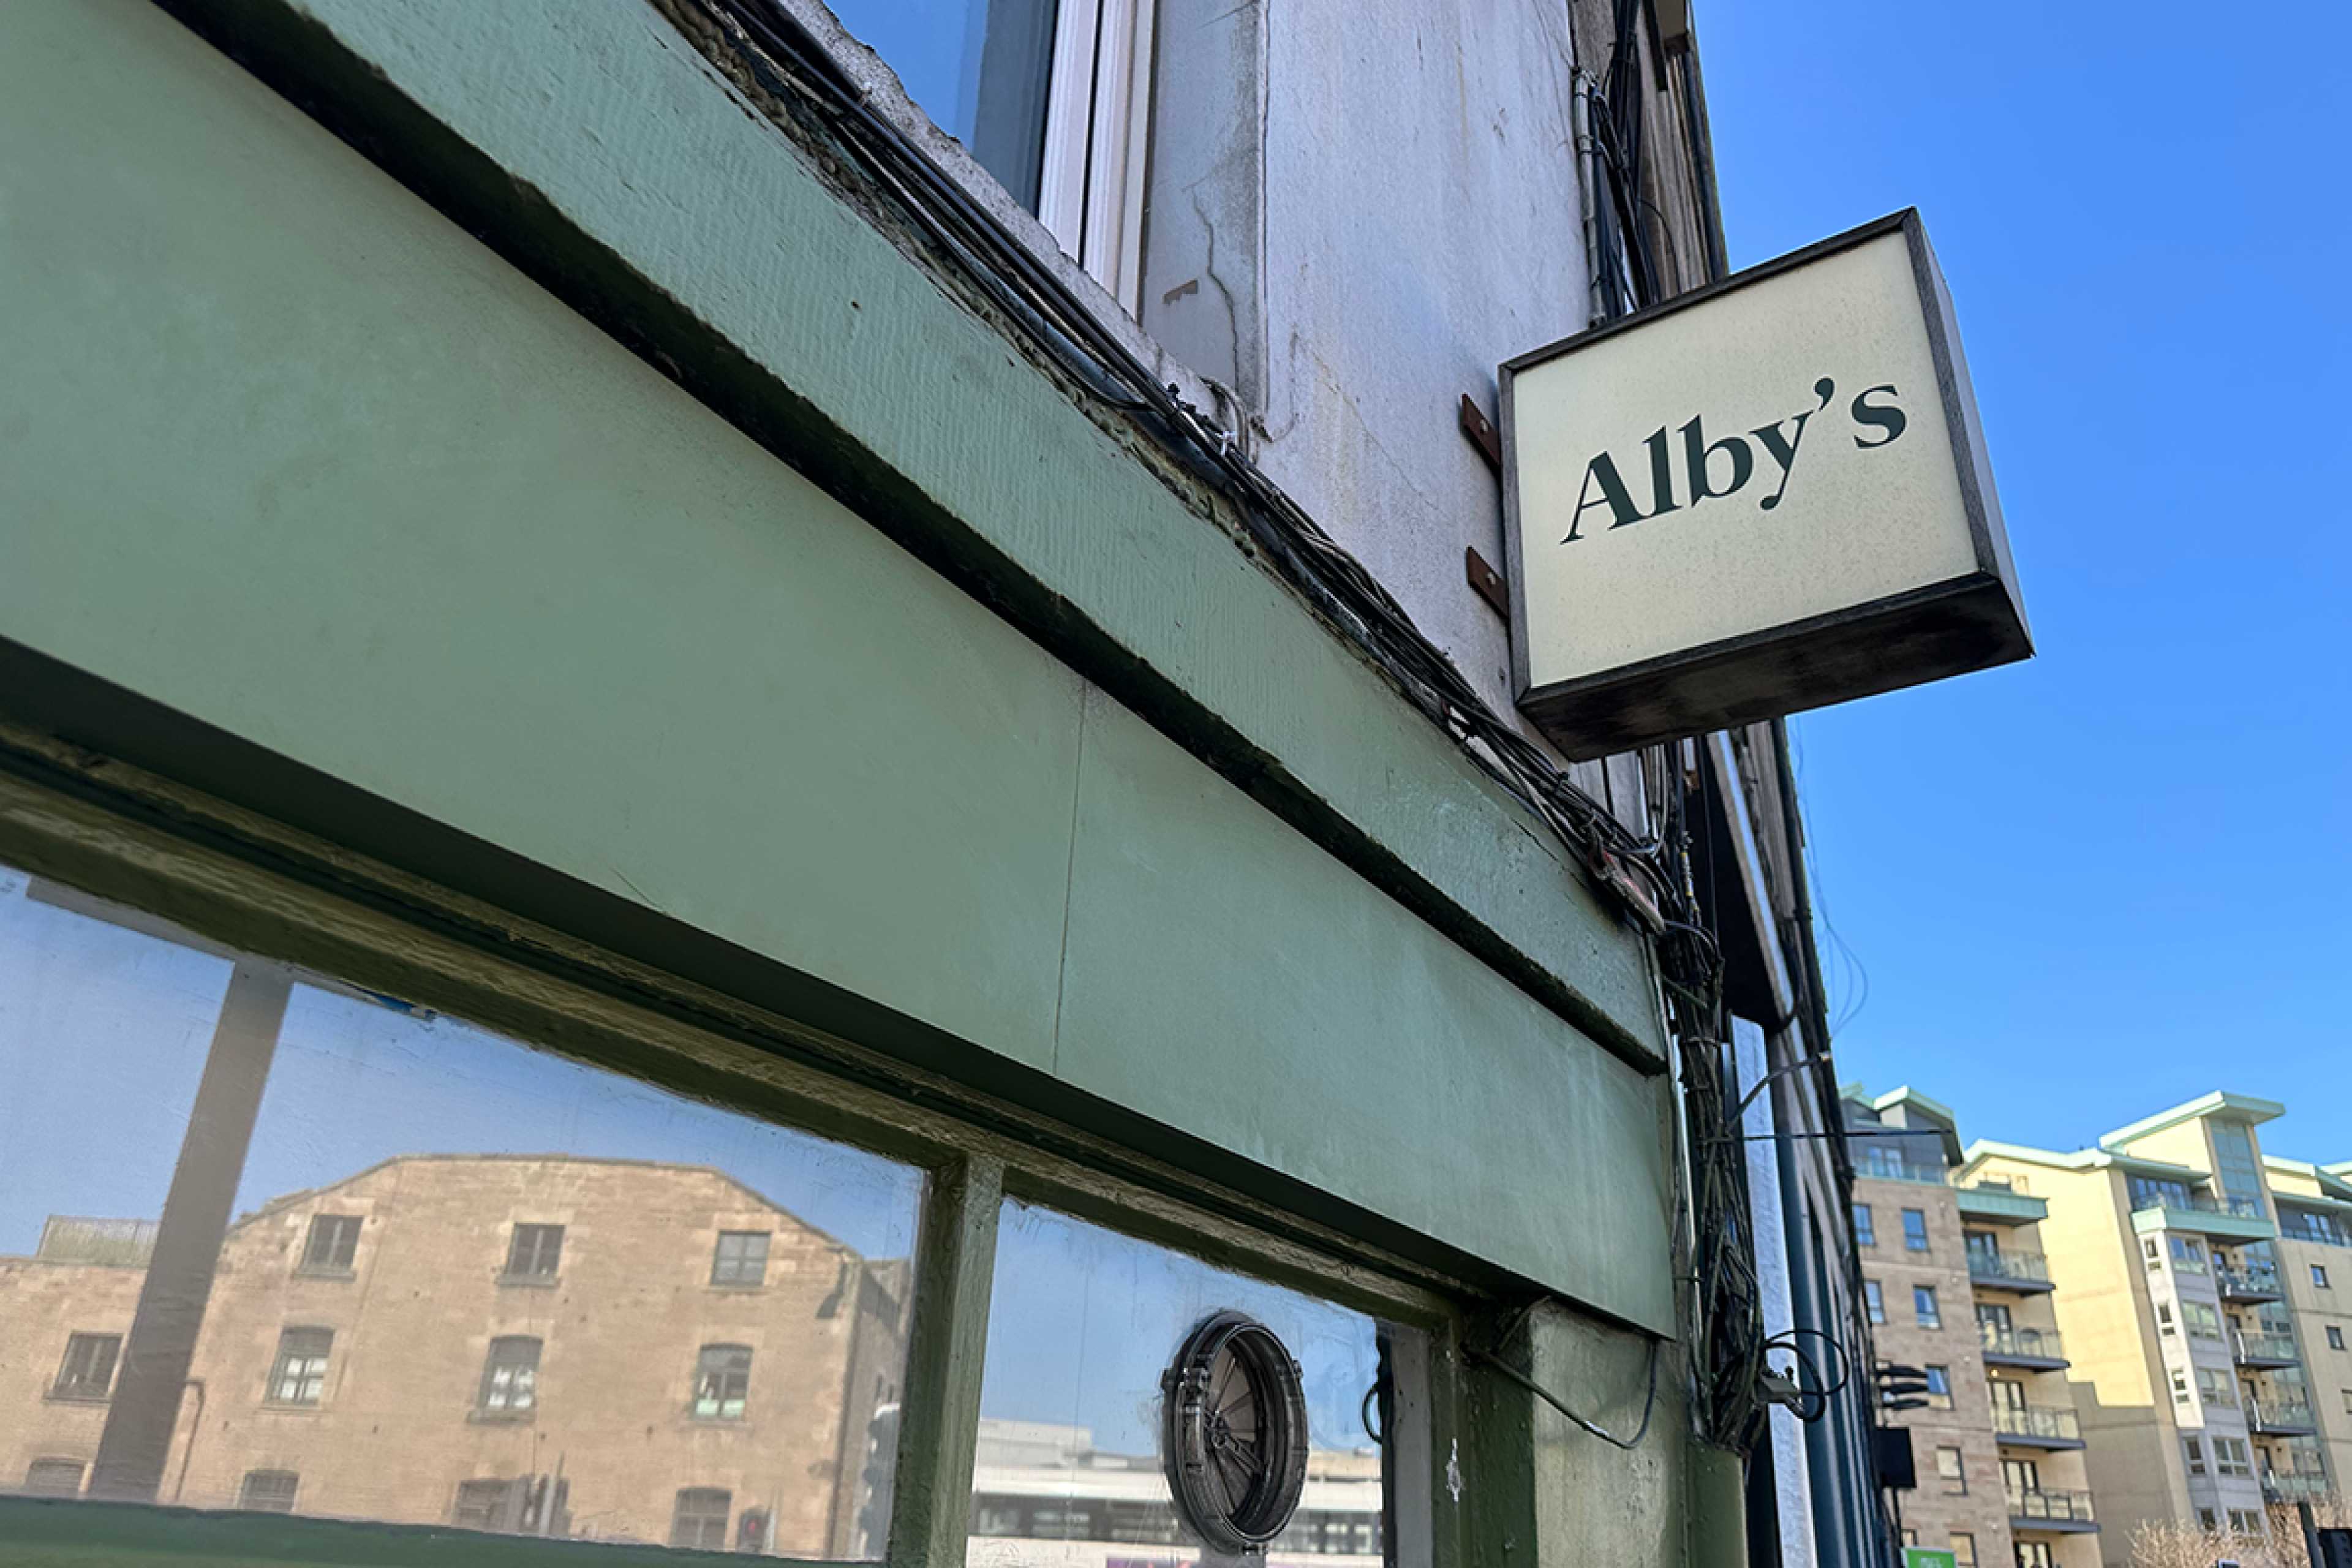 Alby's Sign in Edinburgh